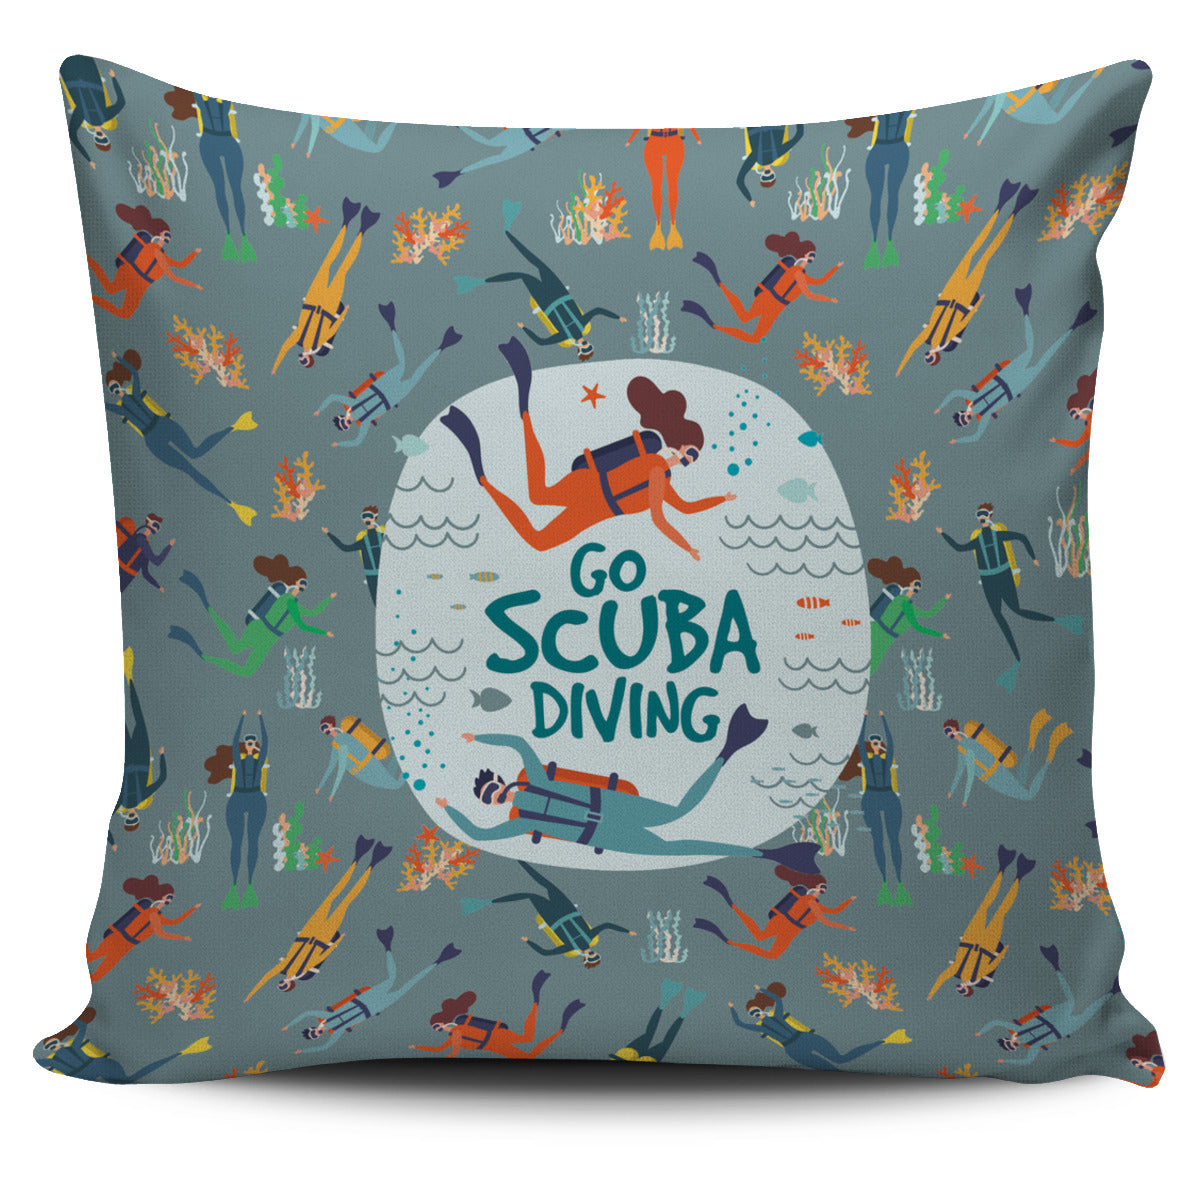 Go Scuba Diving Pillow Cover